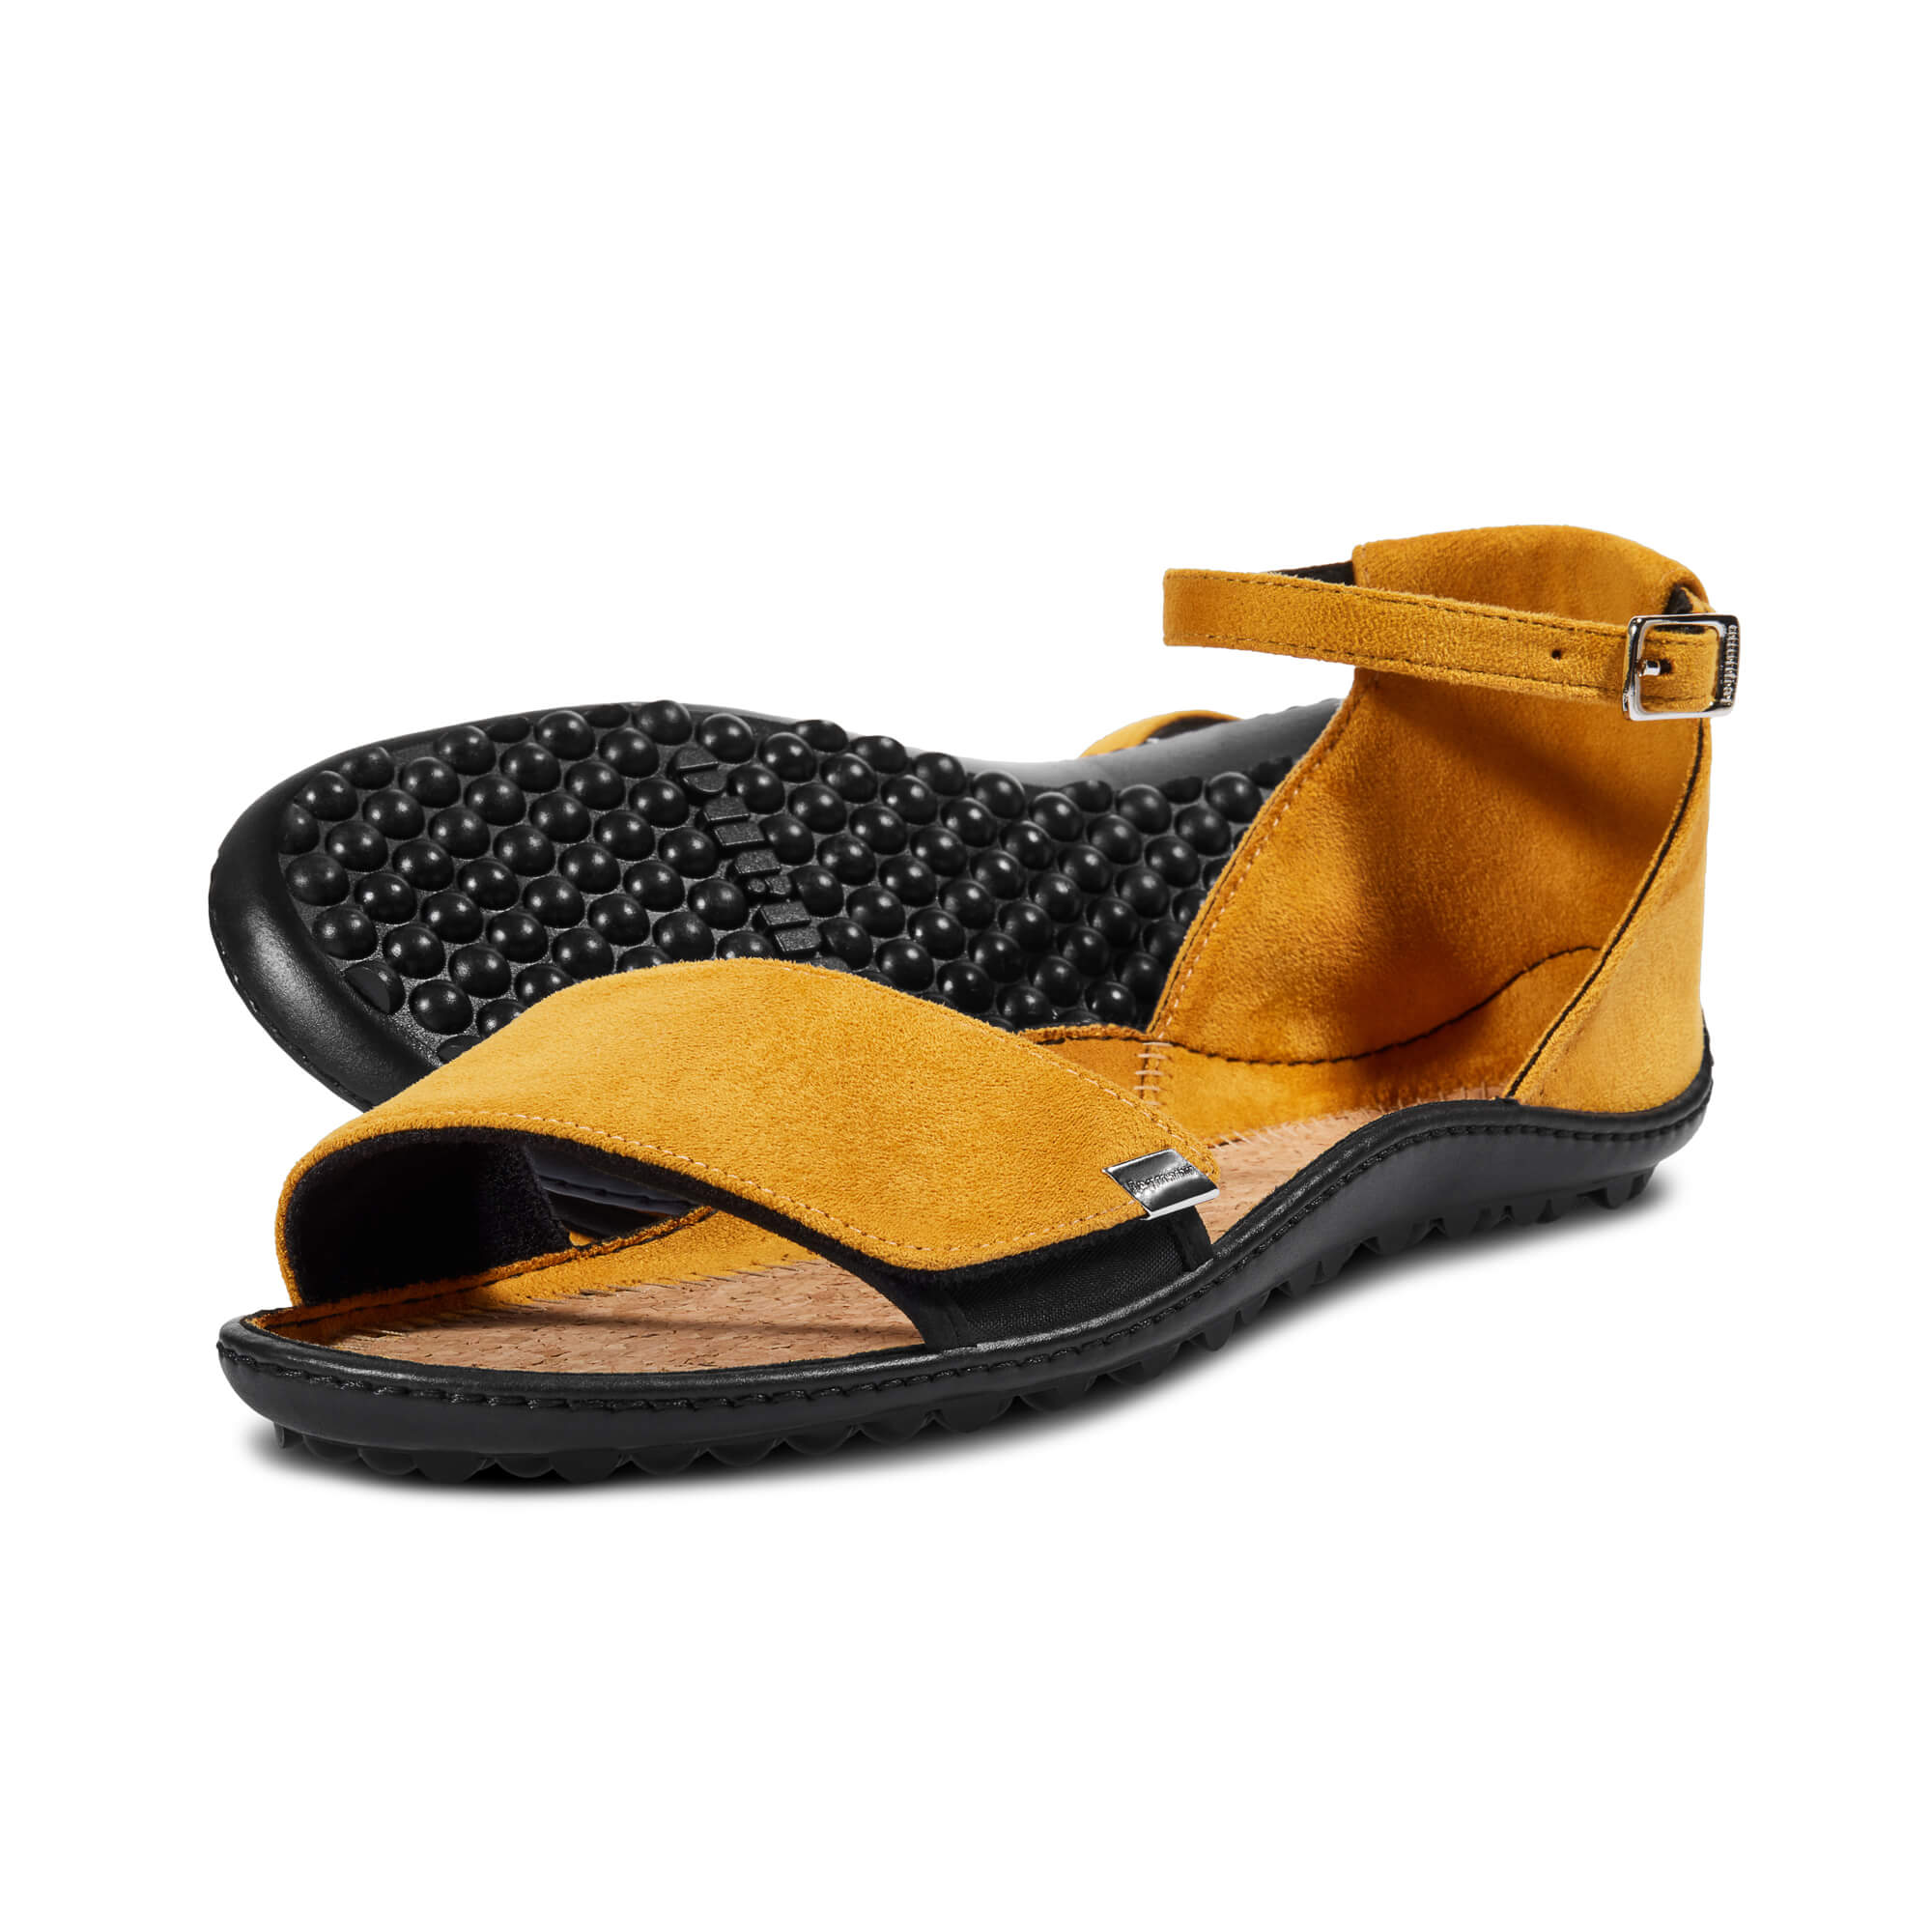 Leguano Jara barfods sandaler til kvinder i farven yellow, par